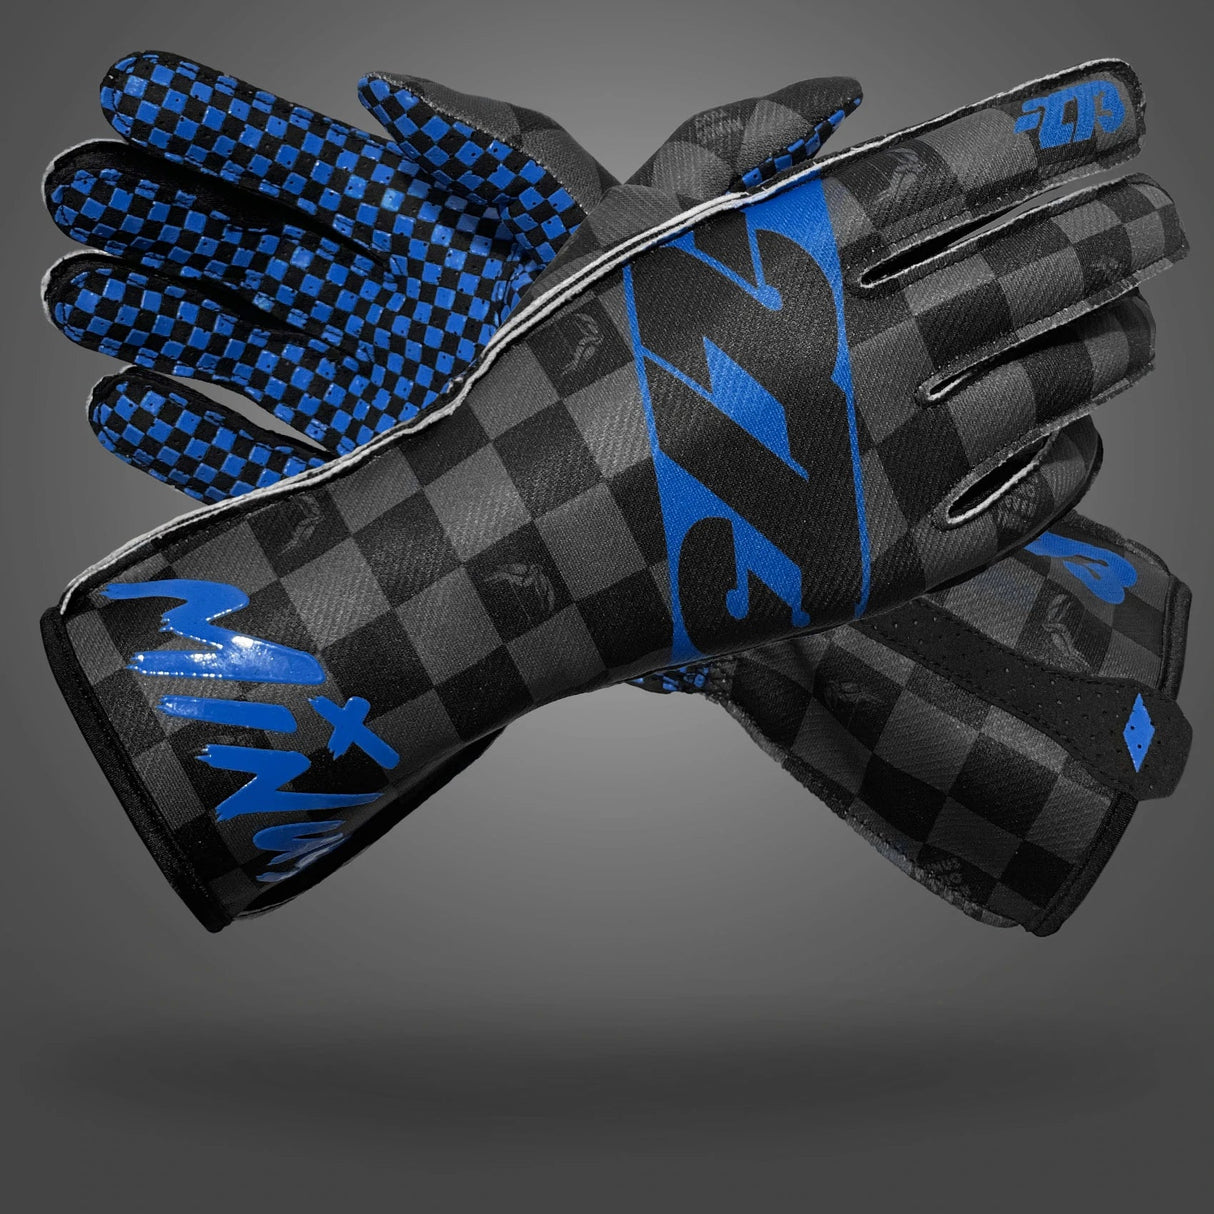 -273 Crenshaw Glove Blue Black - Large